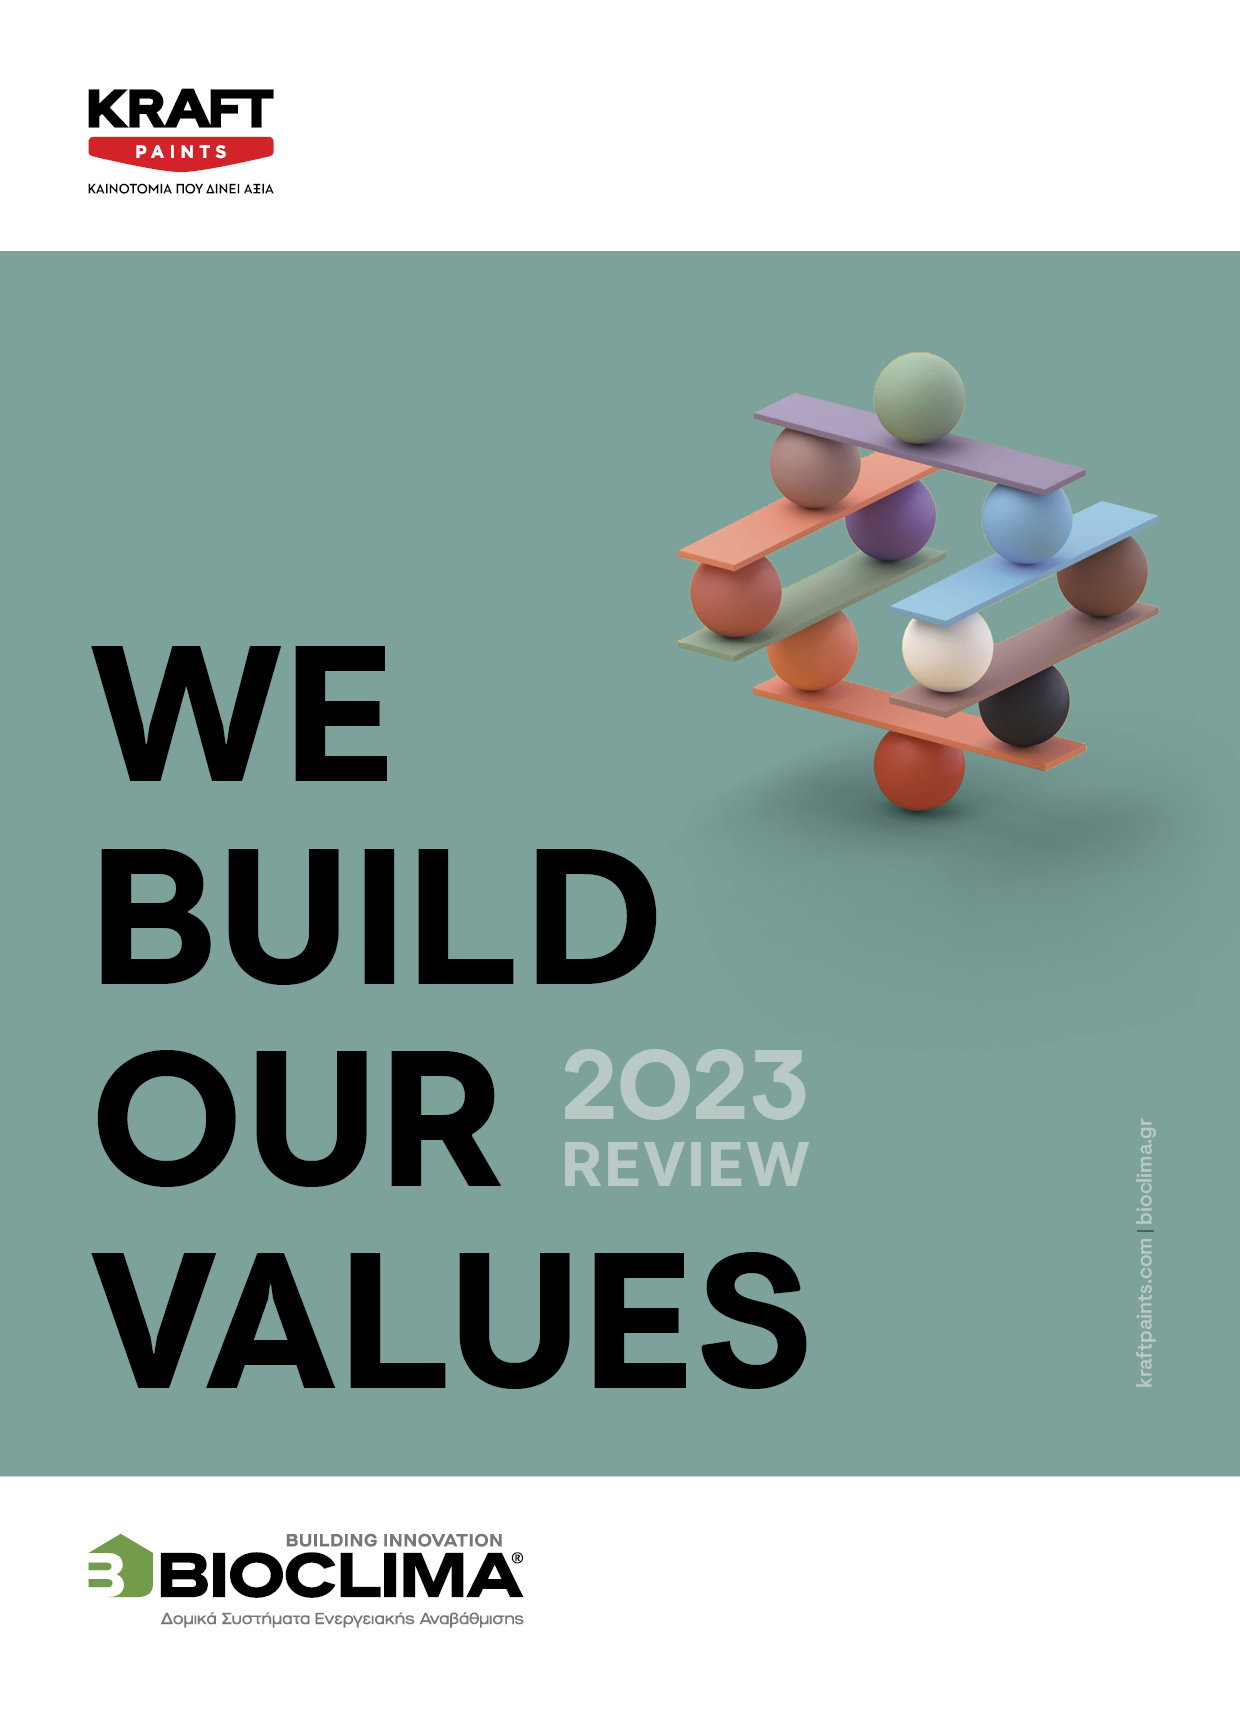 we build our values_kraft_paints_bioclima_review_2023